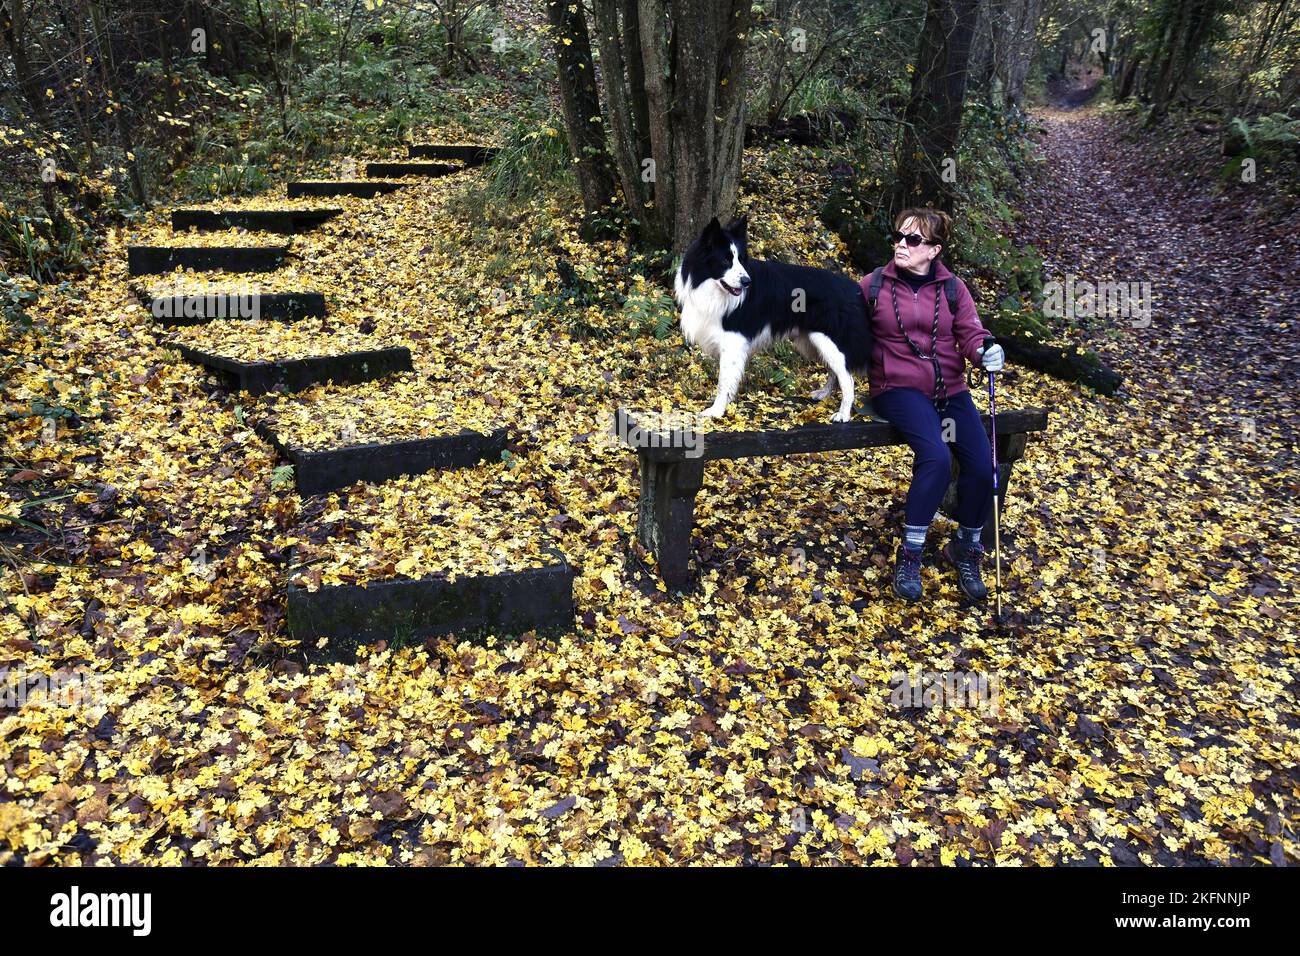 Feuilles d'automne couvrant le plancher boisé le long de Benthall Woods dans la gorge Severn, Ironbridge. Tapis d'automne tapis de nature crédit: Dave Bagnall Banque D'Images